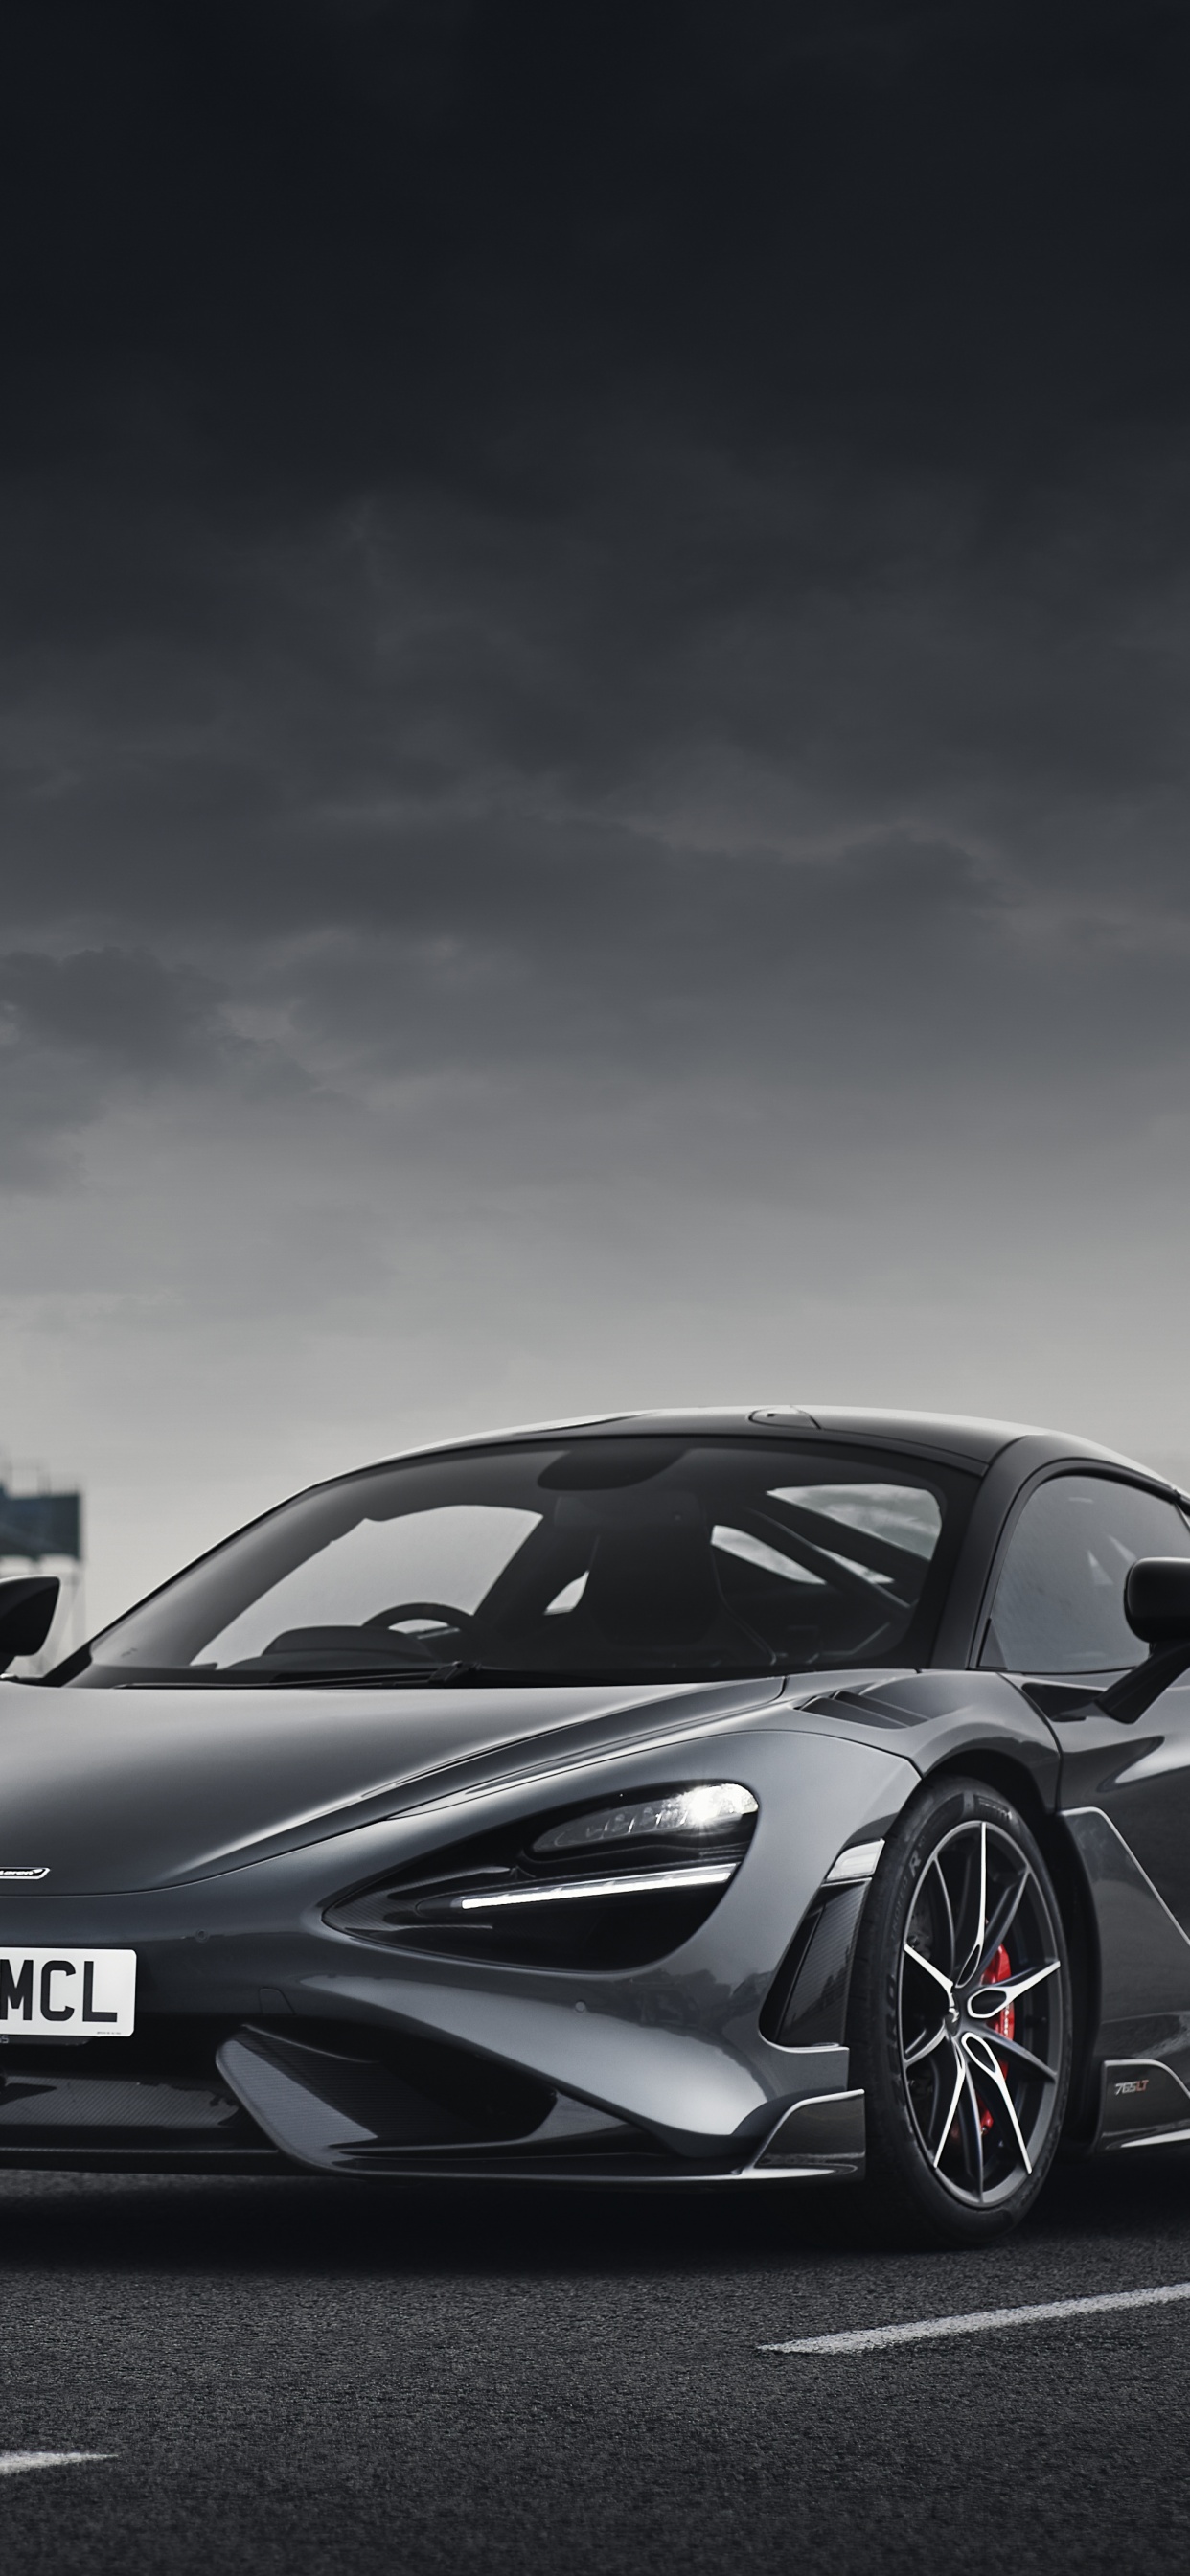 Những người yêu siêu xe không thể bỏ qua bộ sưu tập hình nền McLaren 765LT 4K. Với độ phân giải 5K và những thước phim tuyệt đẹp, hình nền này sẽ giúp cho bảng điều khiển của bạn trở nên đẹp mắt hơn bao giờ hết. Nhấn vào hình để tải ngay hình nền siêu xe đầy lôi cuốn này.